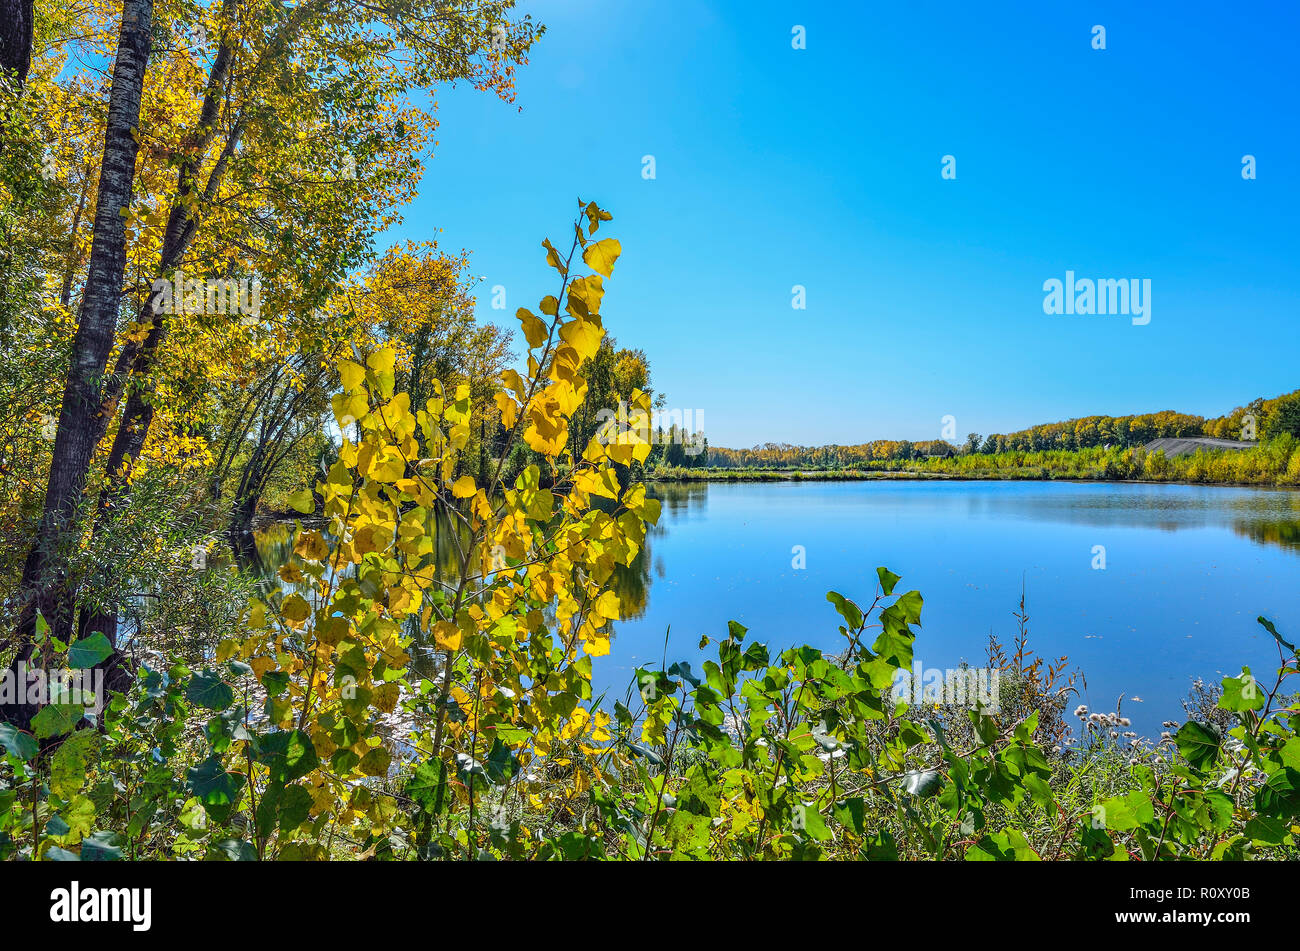 Septembre ensoleillé chaud paysage sur la rive du lac. Ciel bleu et feuillage doré d'arbres se reflétant dans la surface de l'eau - beauté de l'automne nature Banque D'Images